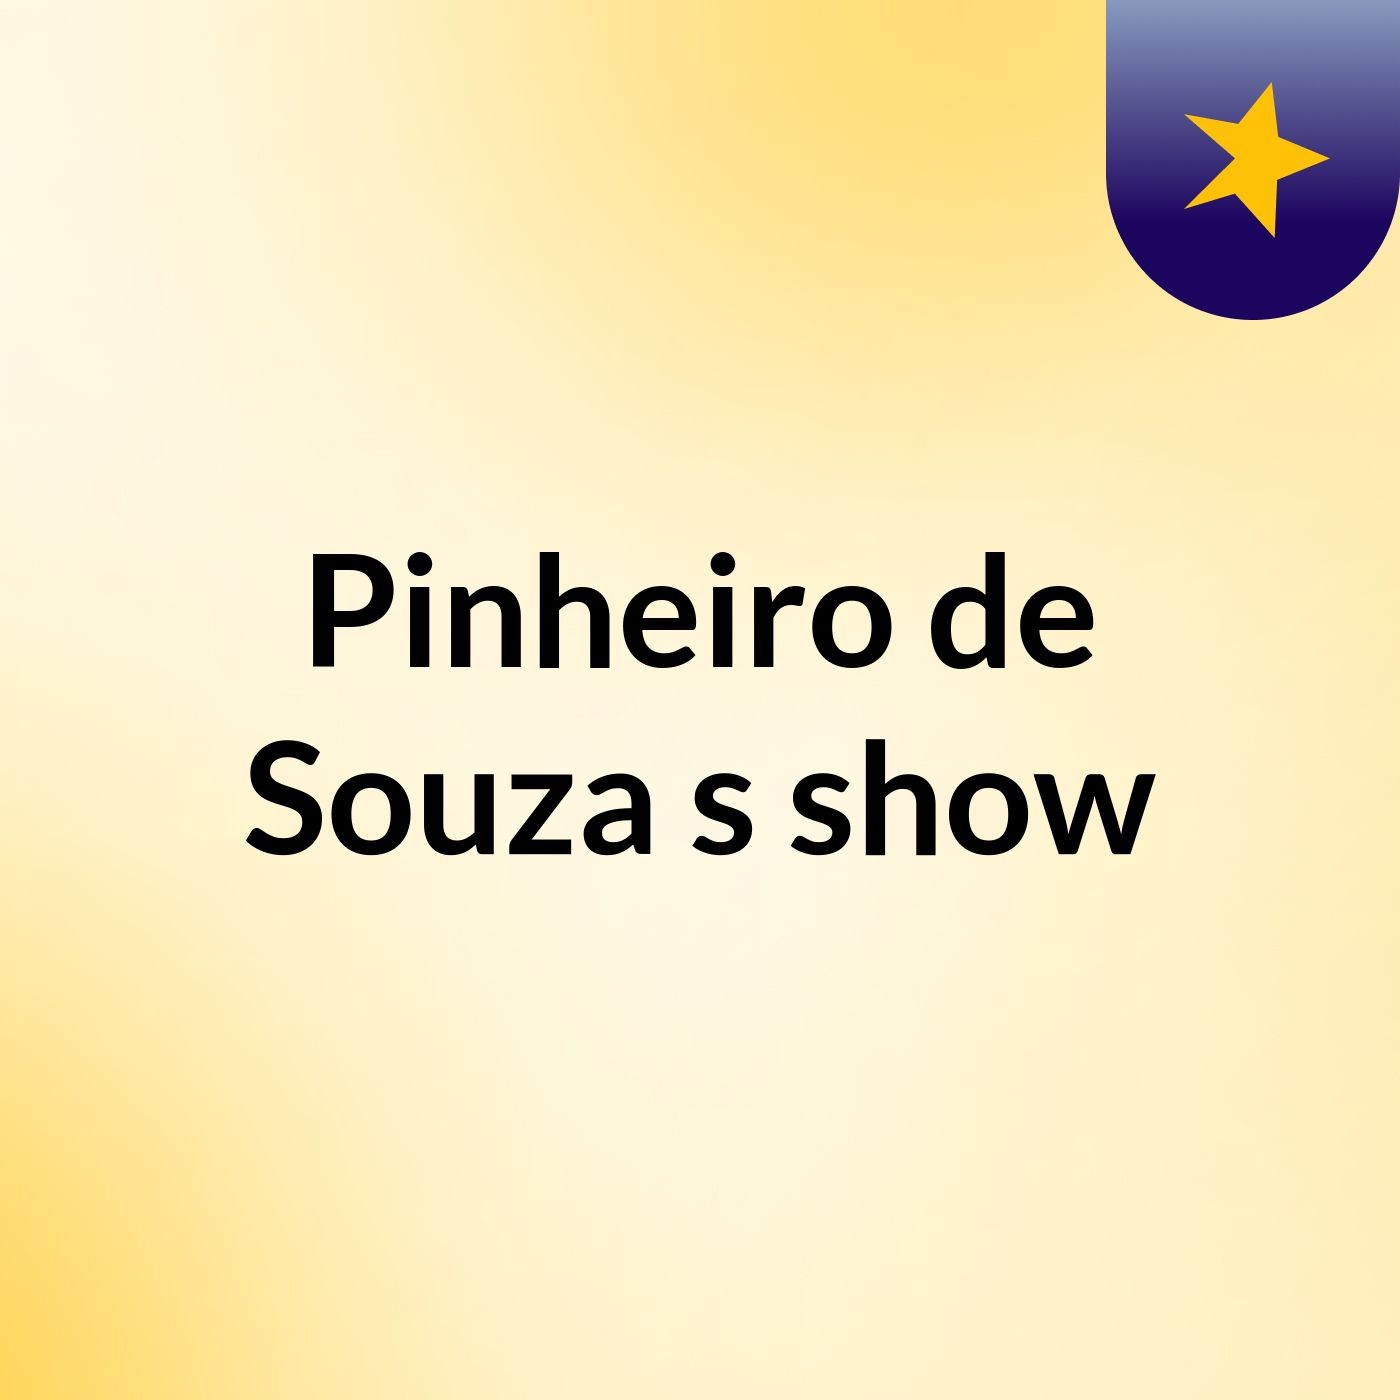 Pinheiro de Souza's show